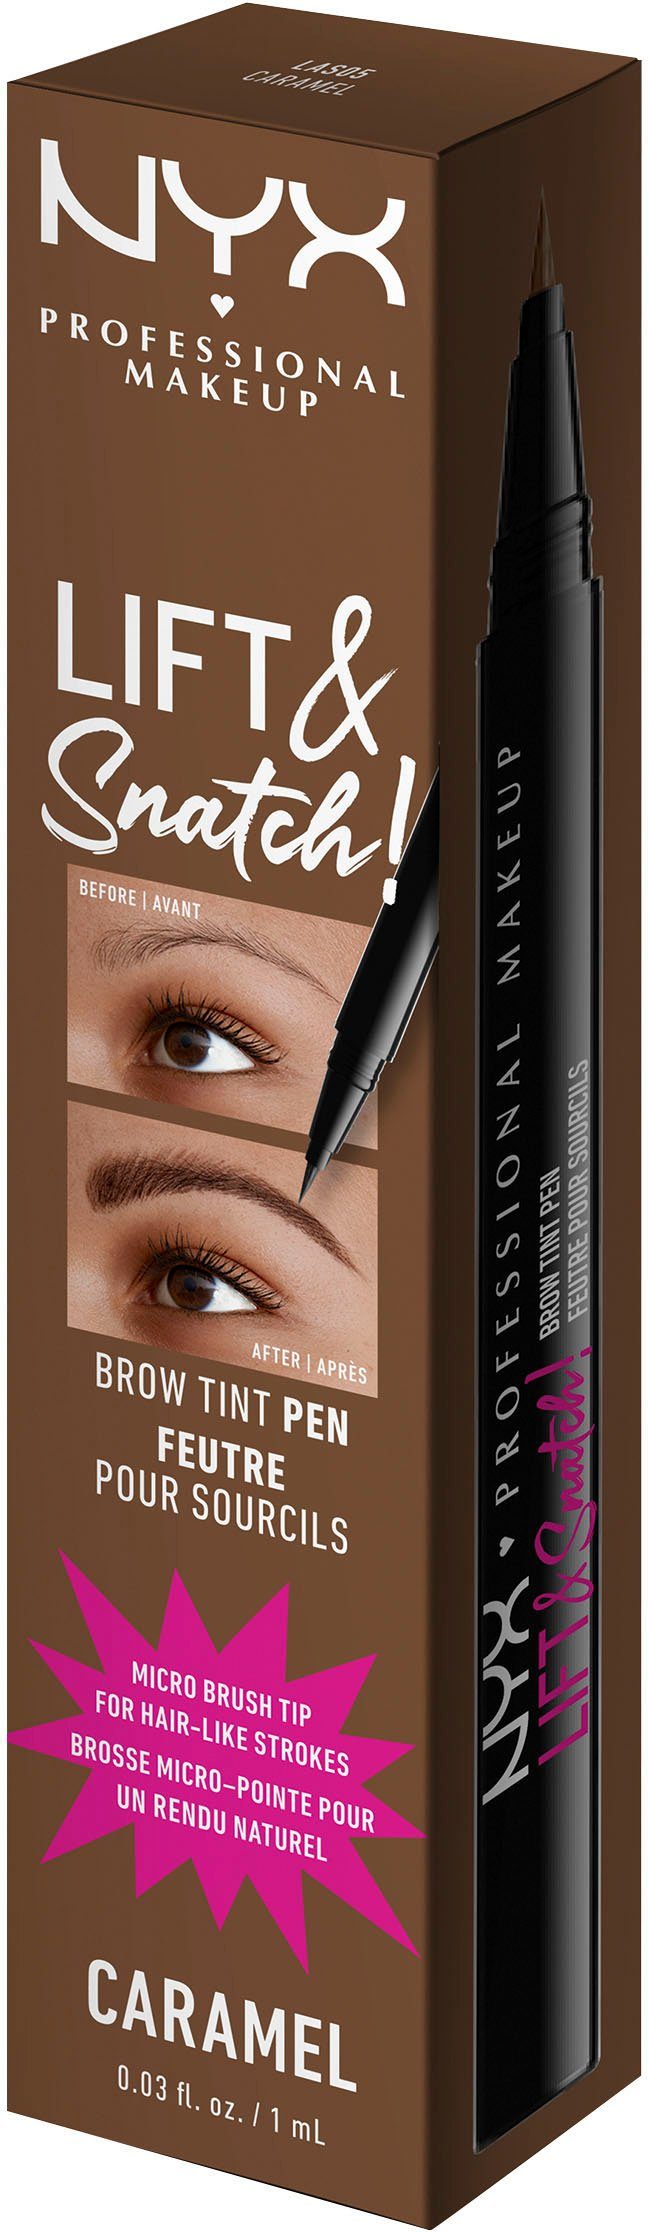 Pen Snatch & Professional Makeup Augenbrauen-Stift Brow caramel NYX Lift Tint